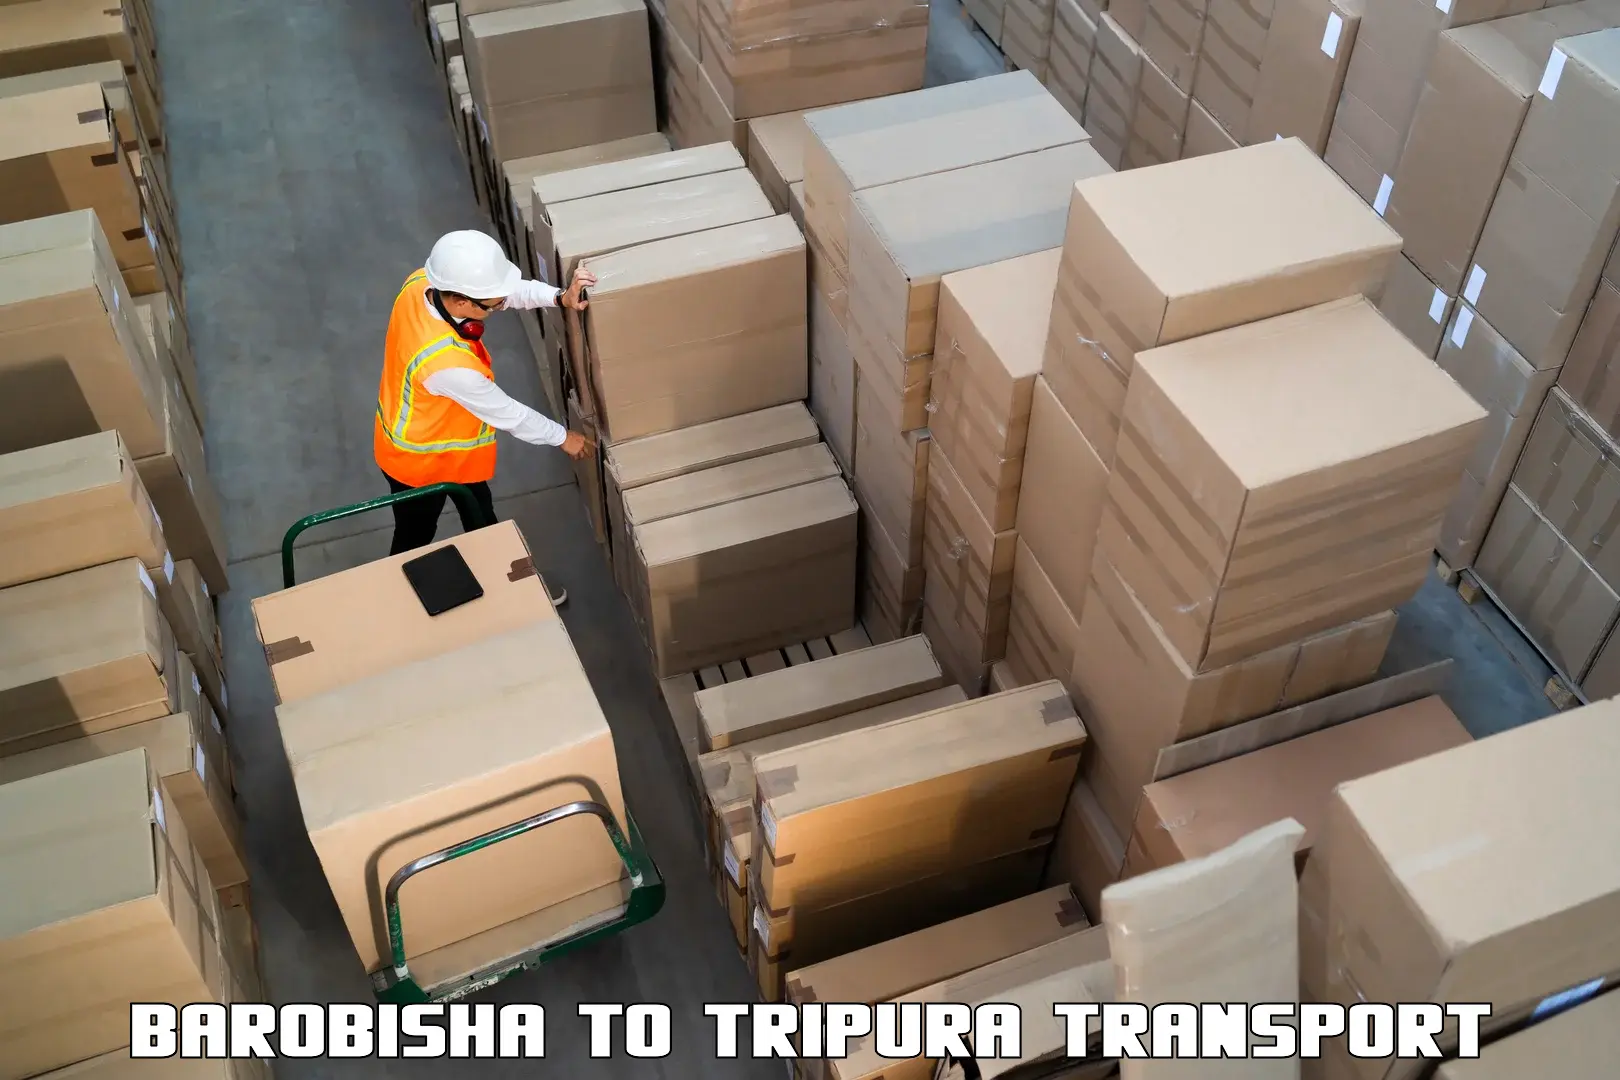 Lorry transport service Barobisha to IIIT Agartala